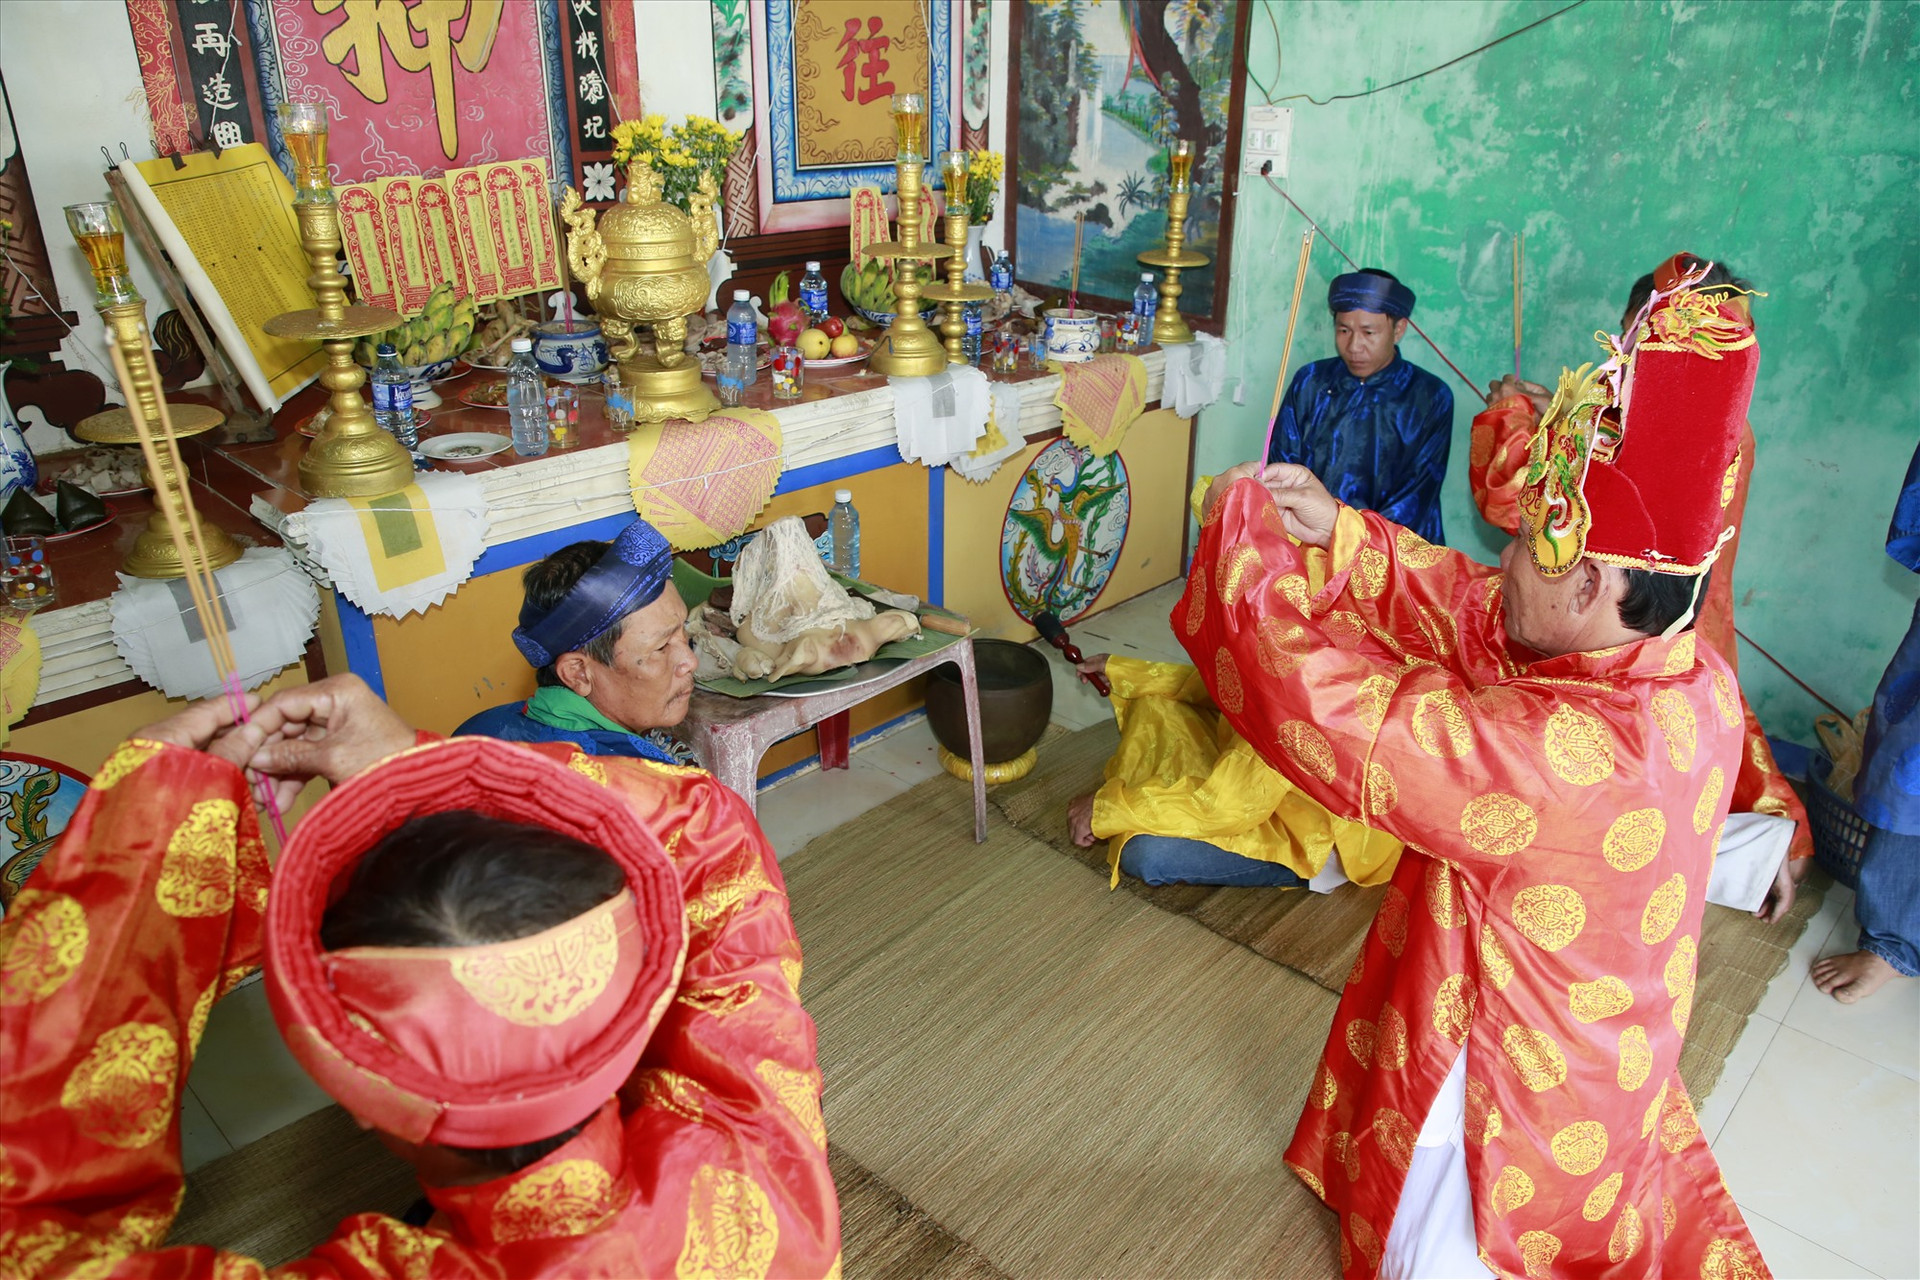 Lễ cúng được các vị cao niên trong làng thực hiện tại đình làng An Lương.